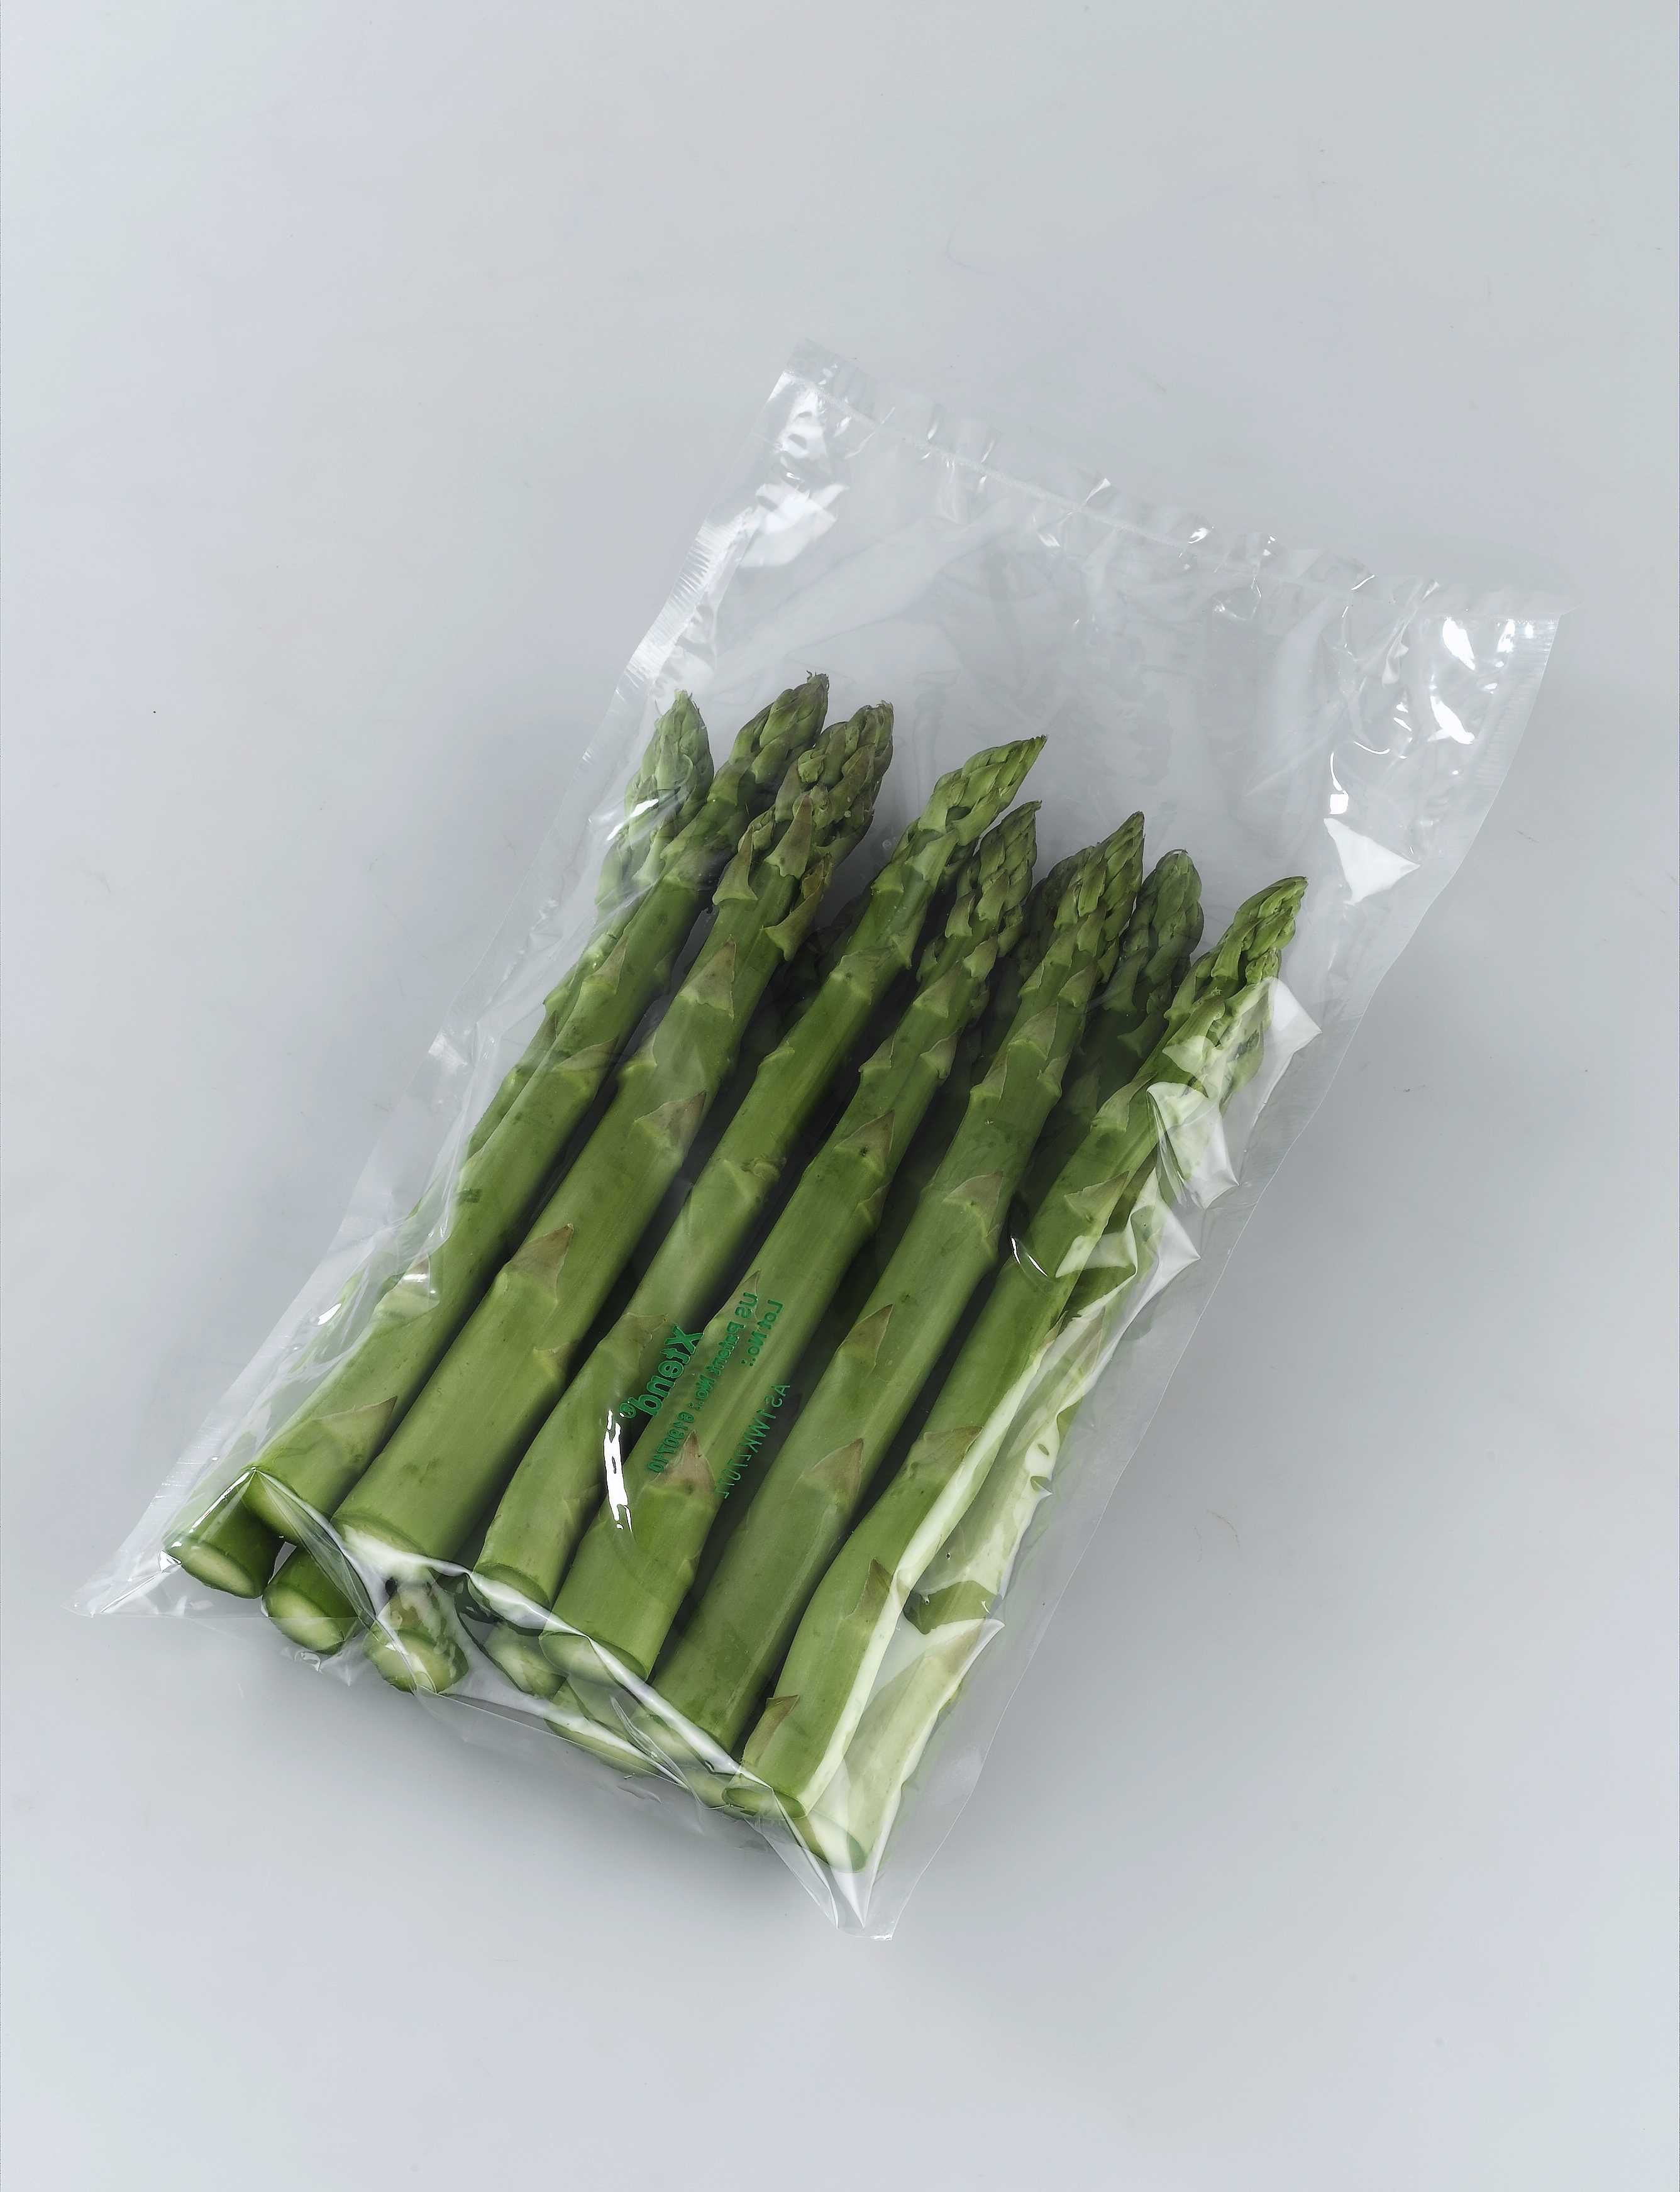 Worek Xtend folia szparagi zielone przechowywanie chłodnia 28 dni